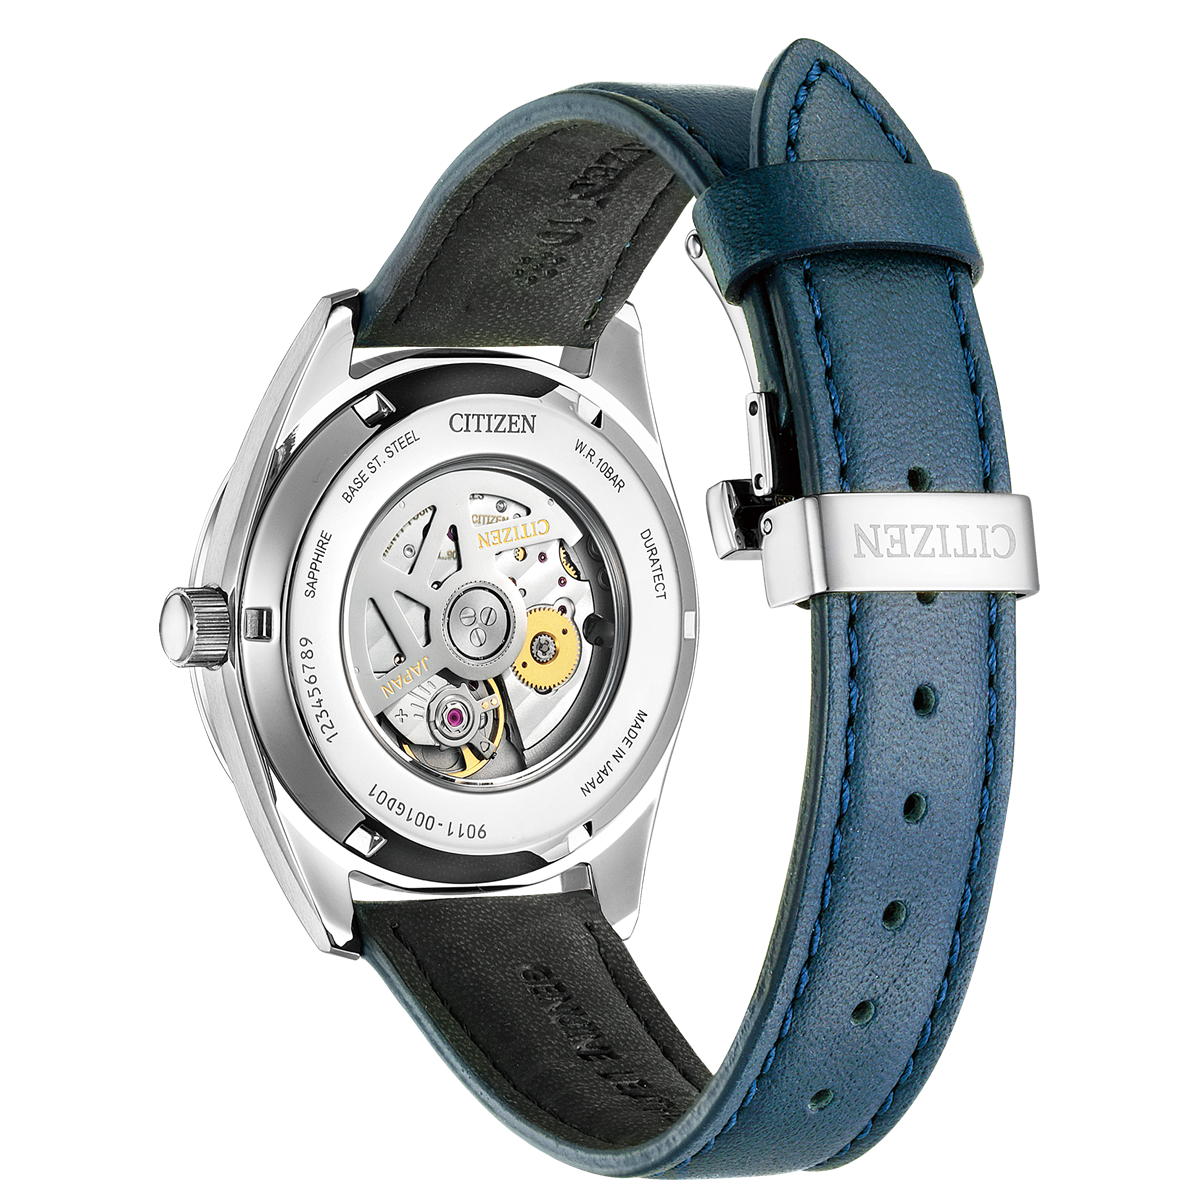 シチズンコレクション CITIZEN COLLECTION メカニカル 自動巻き 機械式 銀箔漆文字板モデル 腕時計 メンズ NB1060-12L